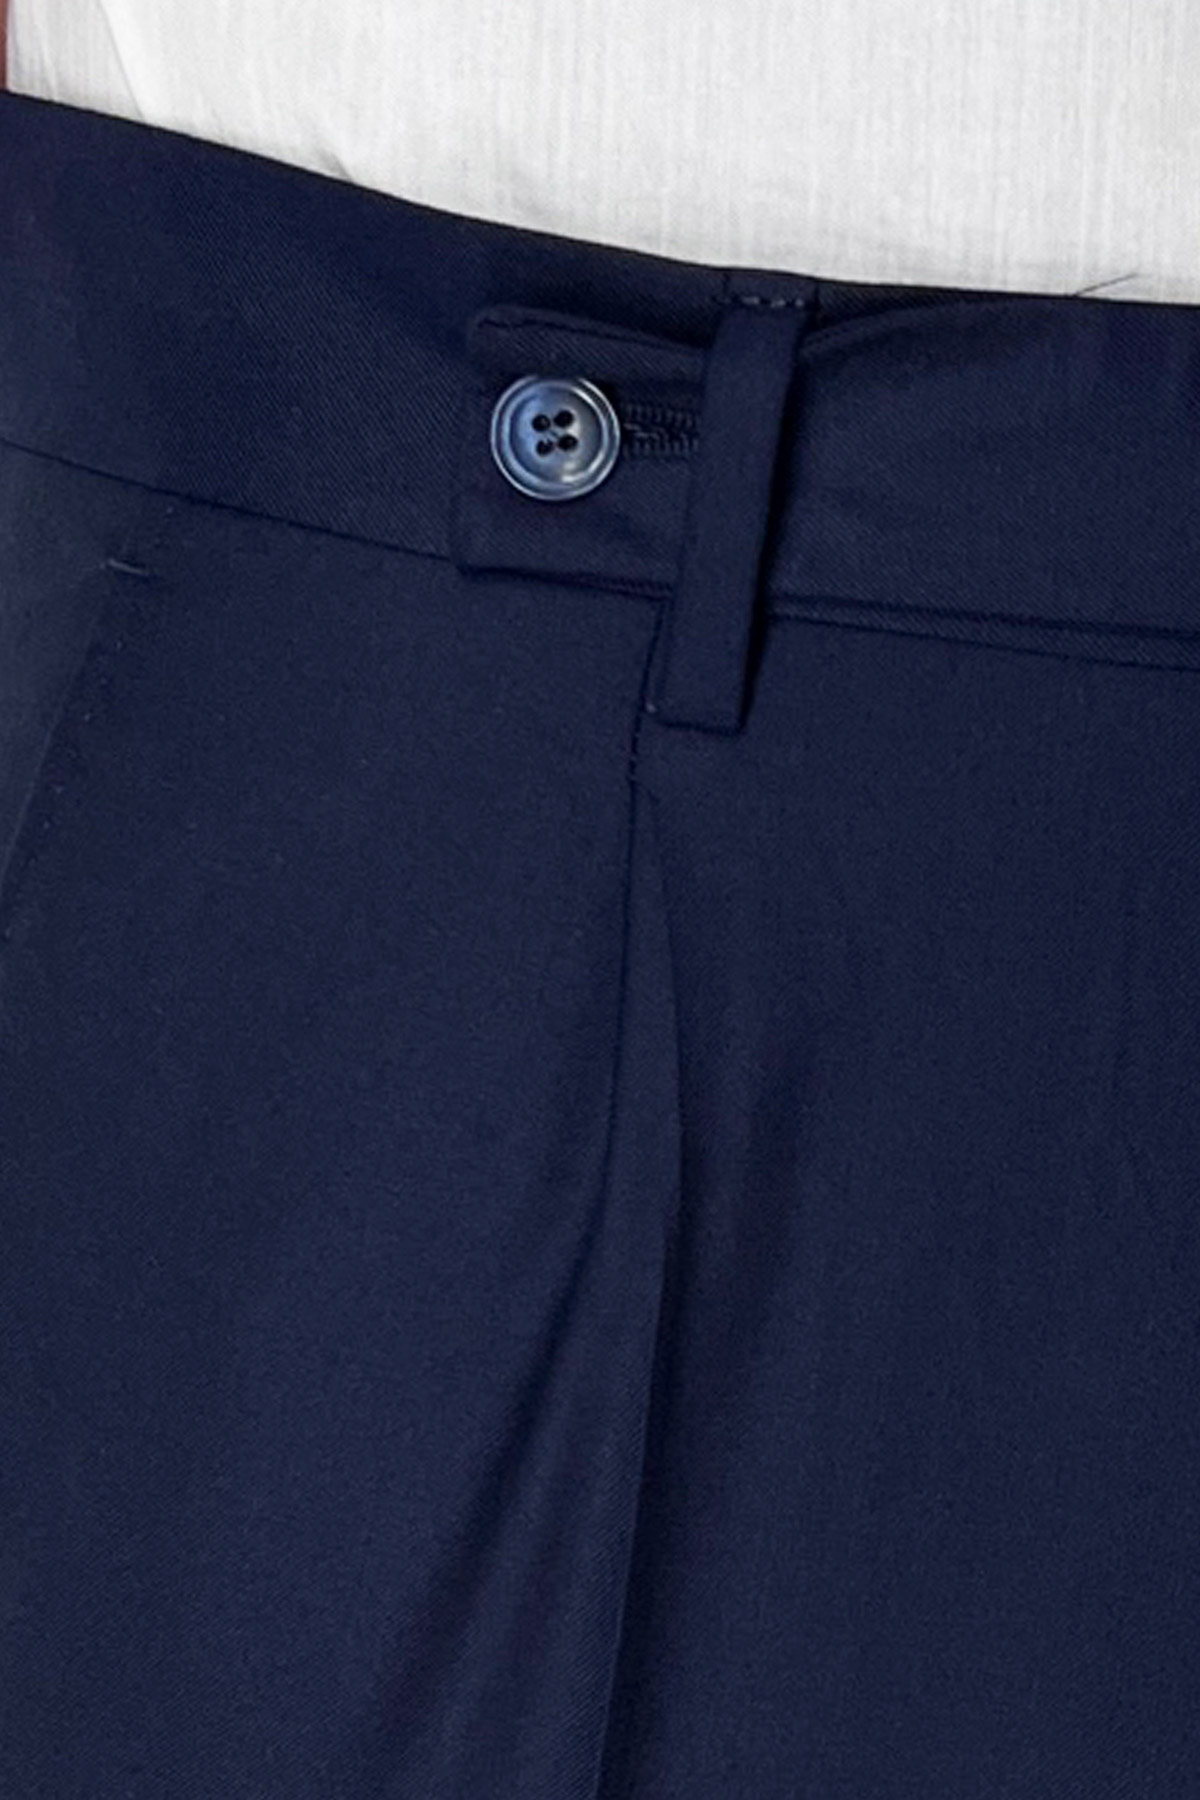 Pantalone uomo Navy blu fresco lana super 140's Holland & Sherry tasca america con una pinces e risvolto 4cm